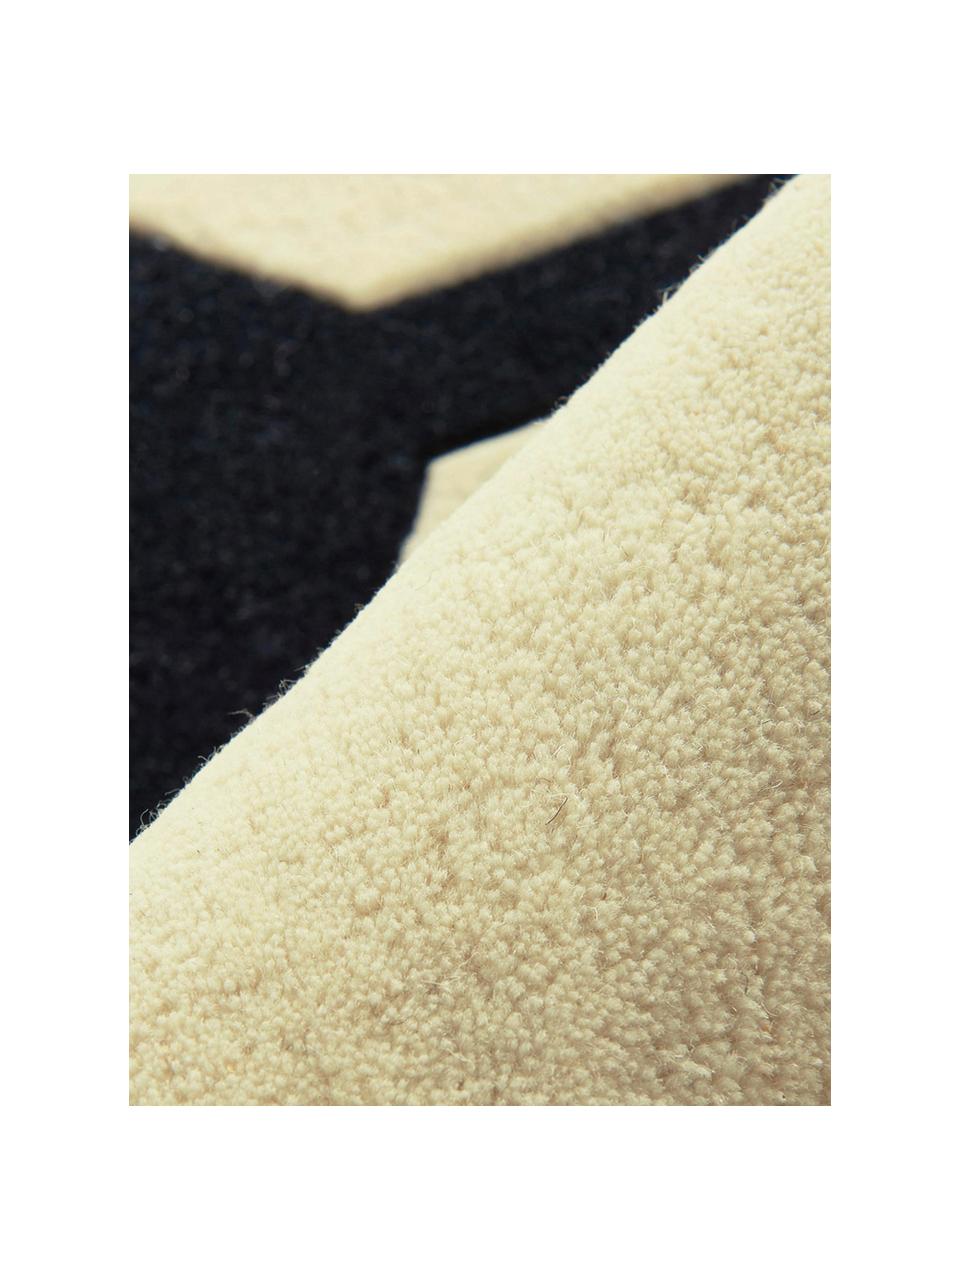 Tappeto rotondo in lana Peace Out, Lana, Color crema, nero, Ø 120 cm